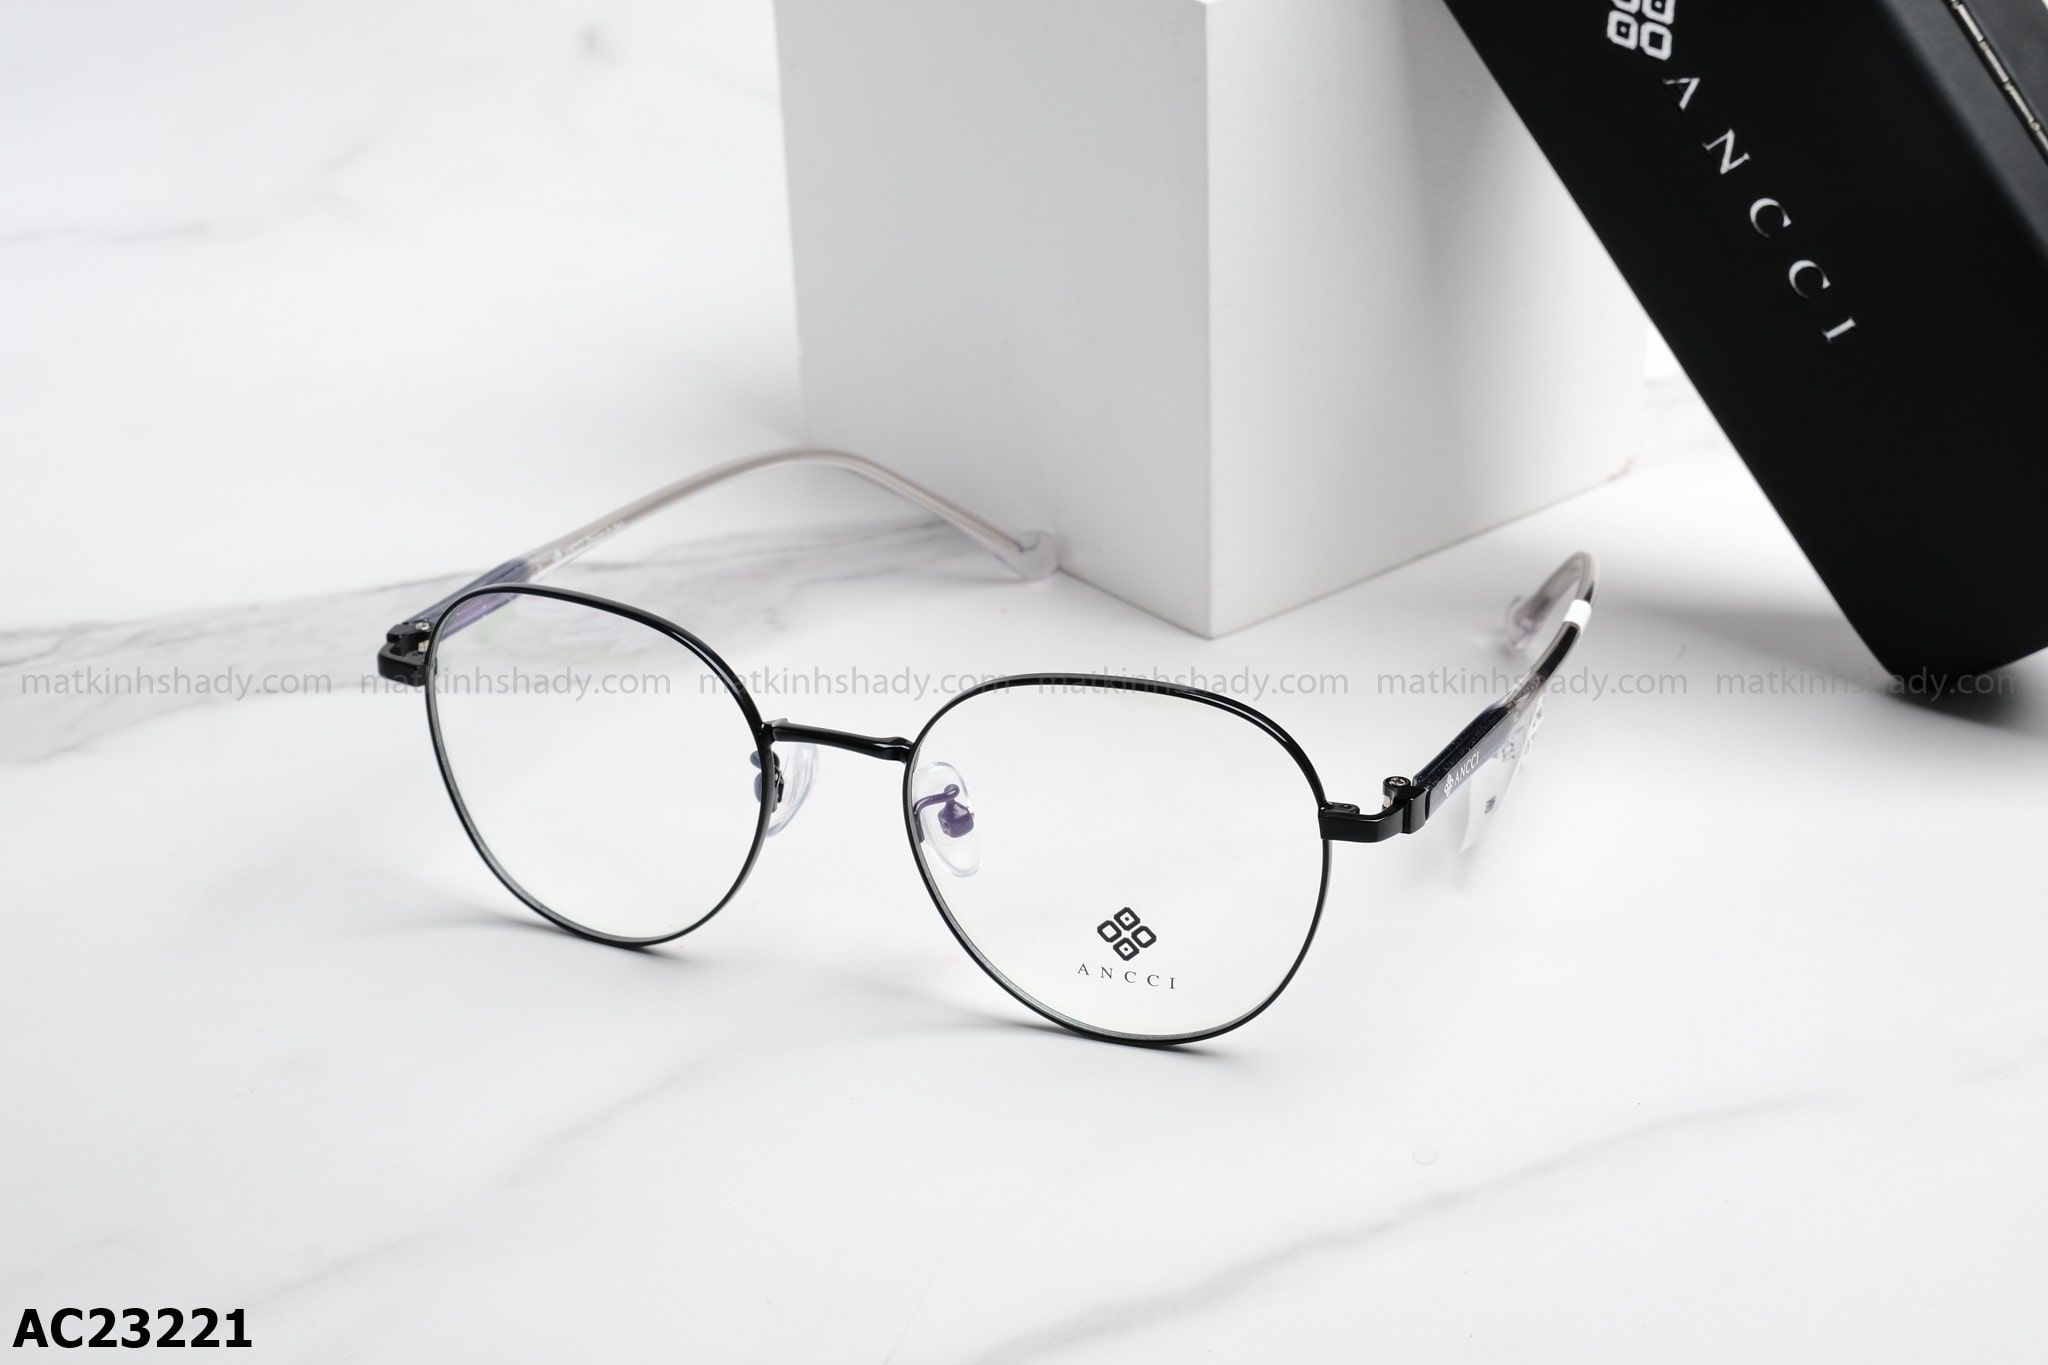  ANCCI Eyewear - Glasses - AC23221 